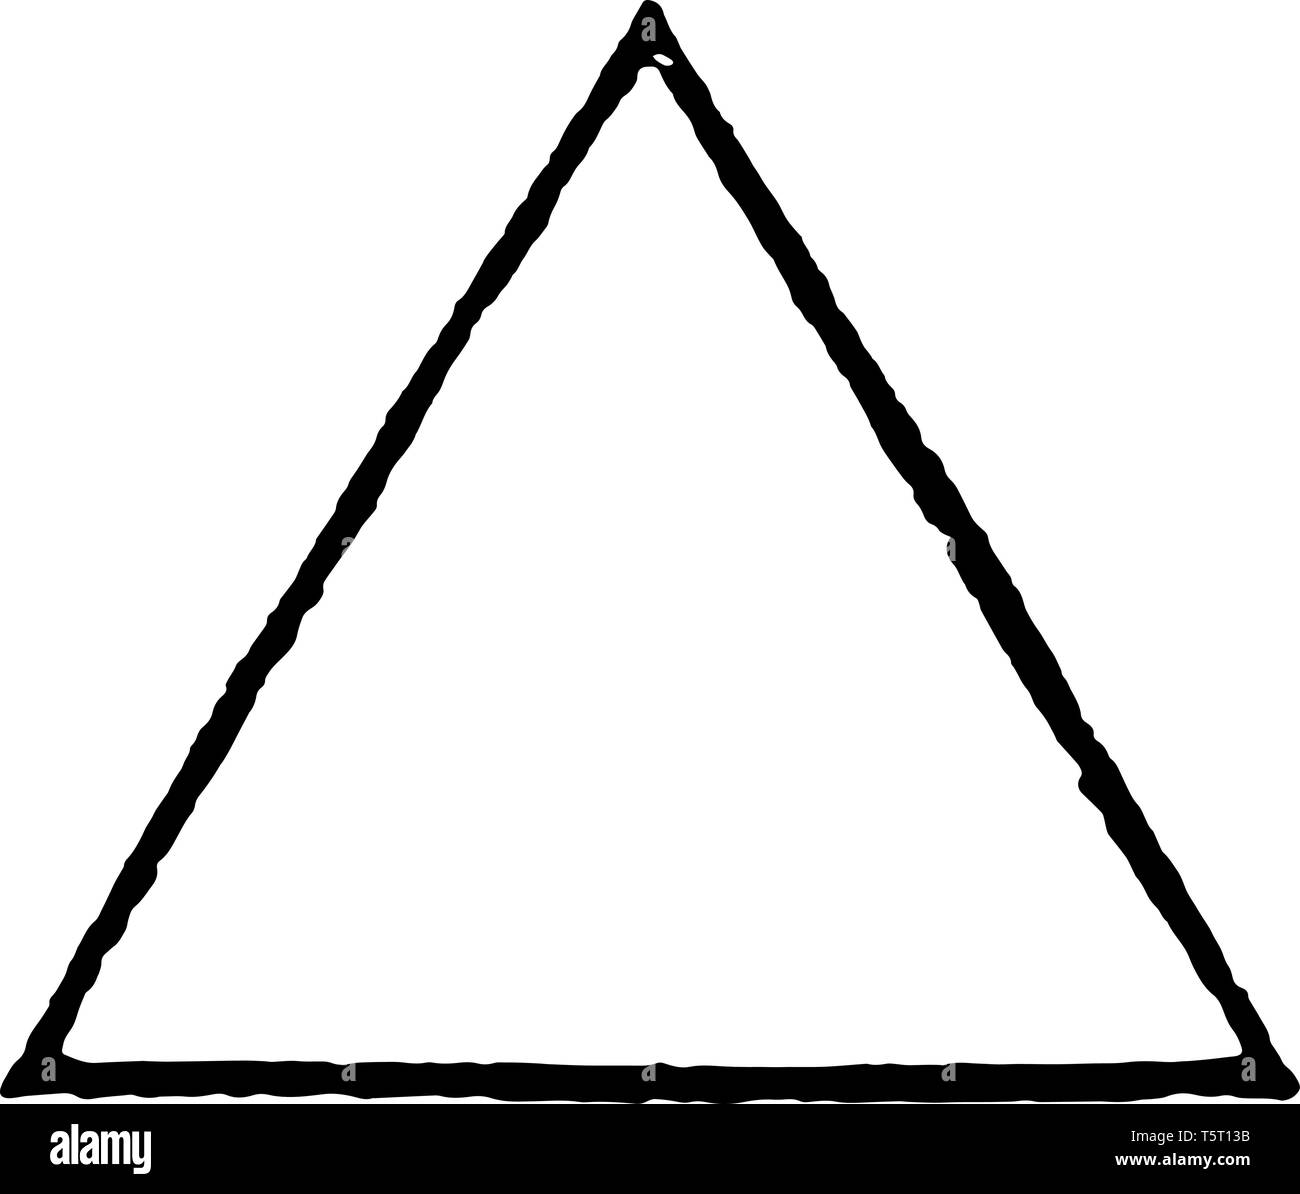 Una imagen del triángulo equilátero. Los tres lados de este triángulo  equilátero son la misma línea vintage de dibujo o ilustración de grabado  Imagen Vector de stock - Alamy